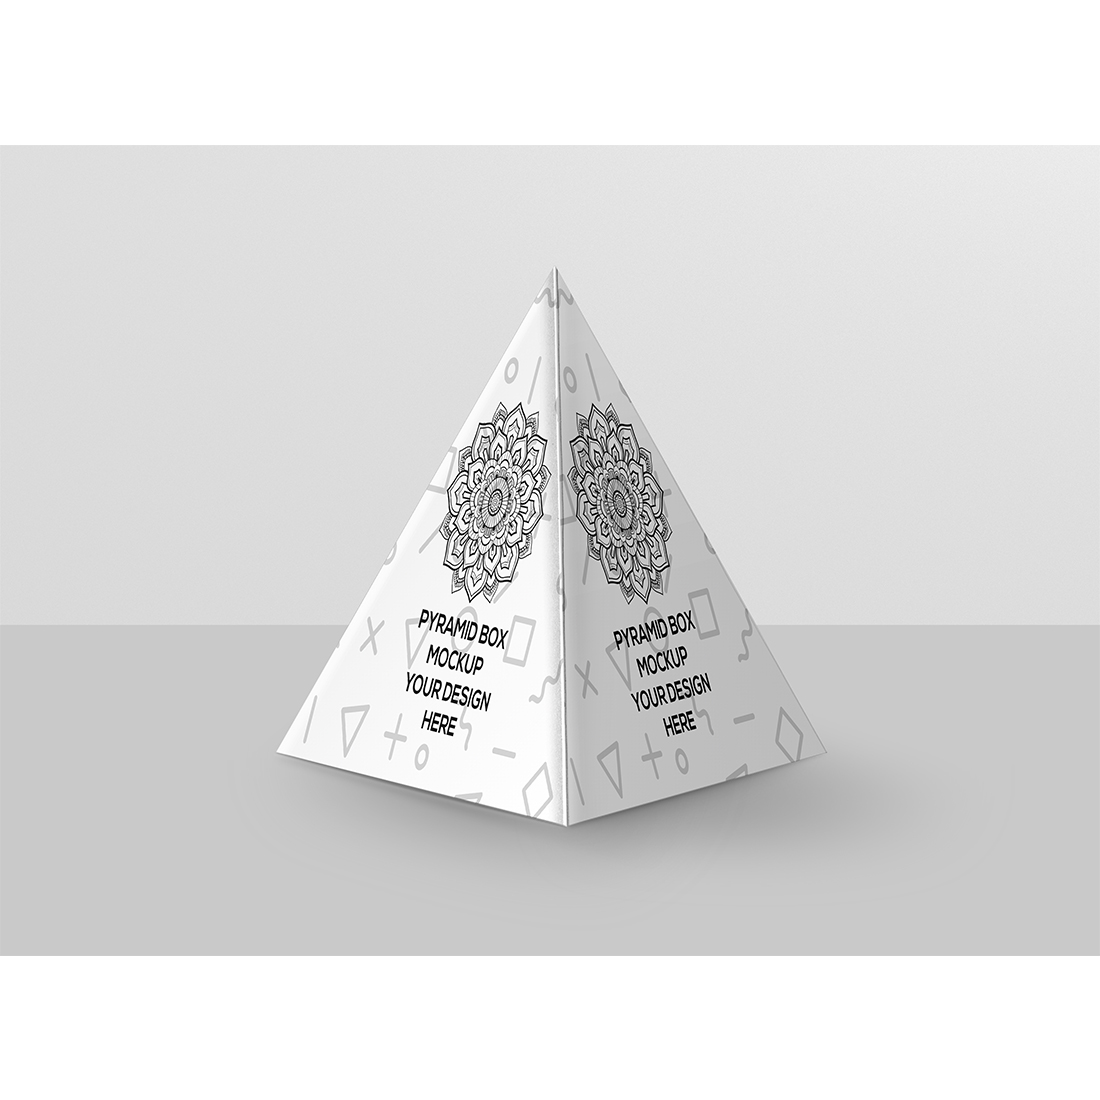 Pyramid Box Mockup preview image.